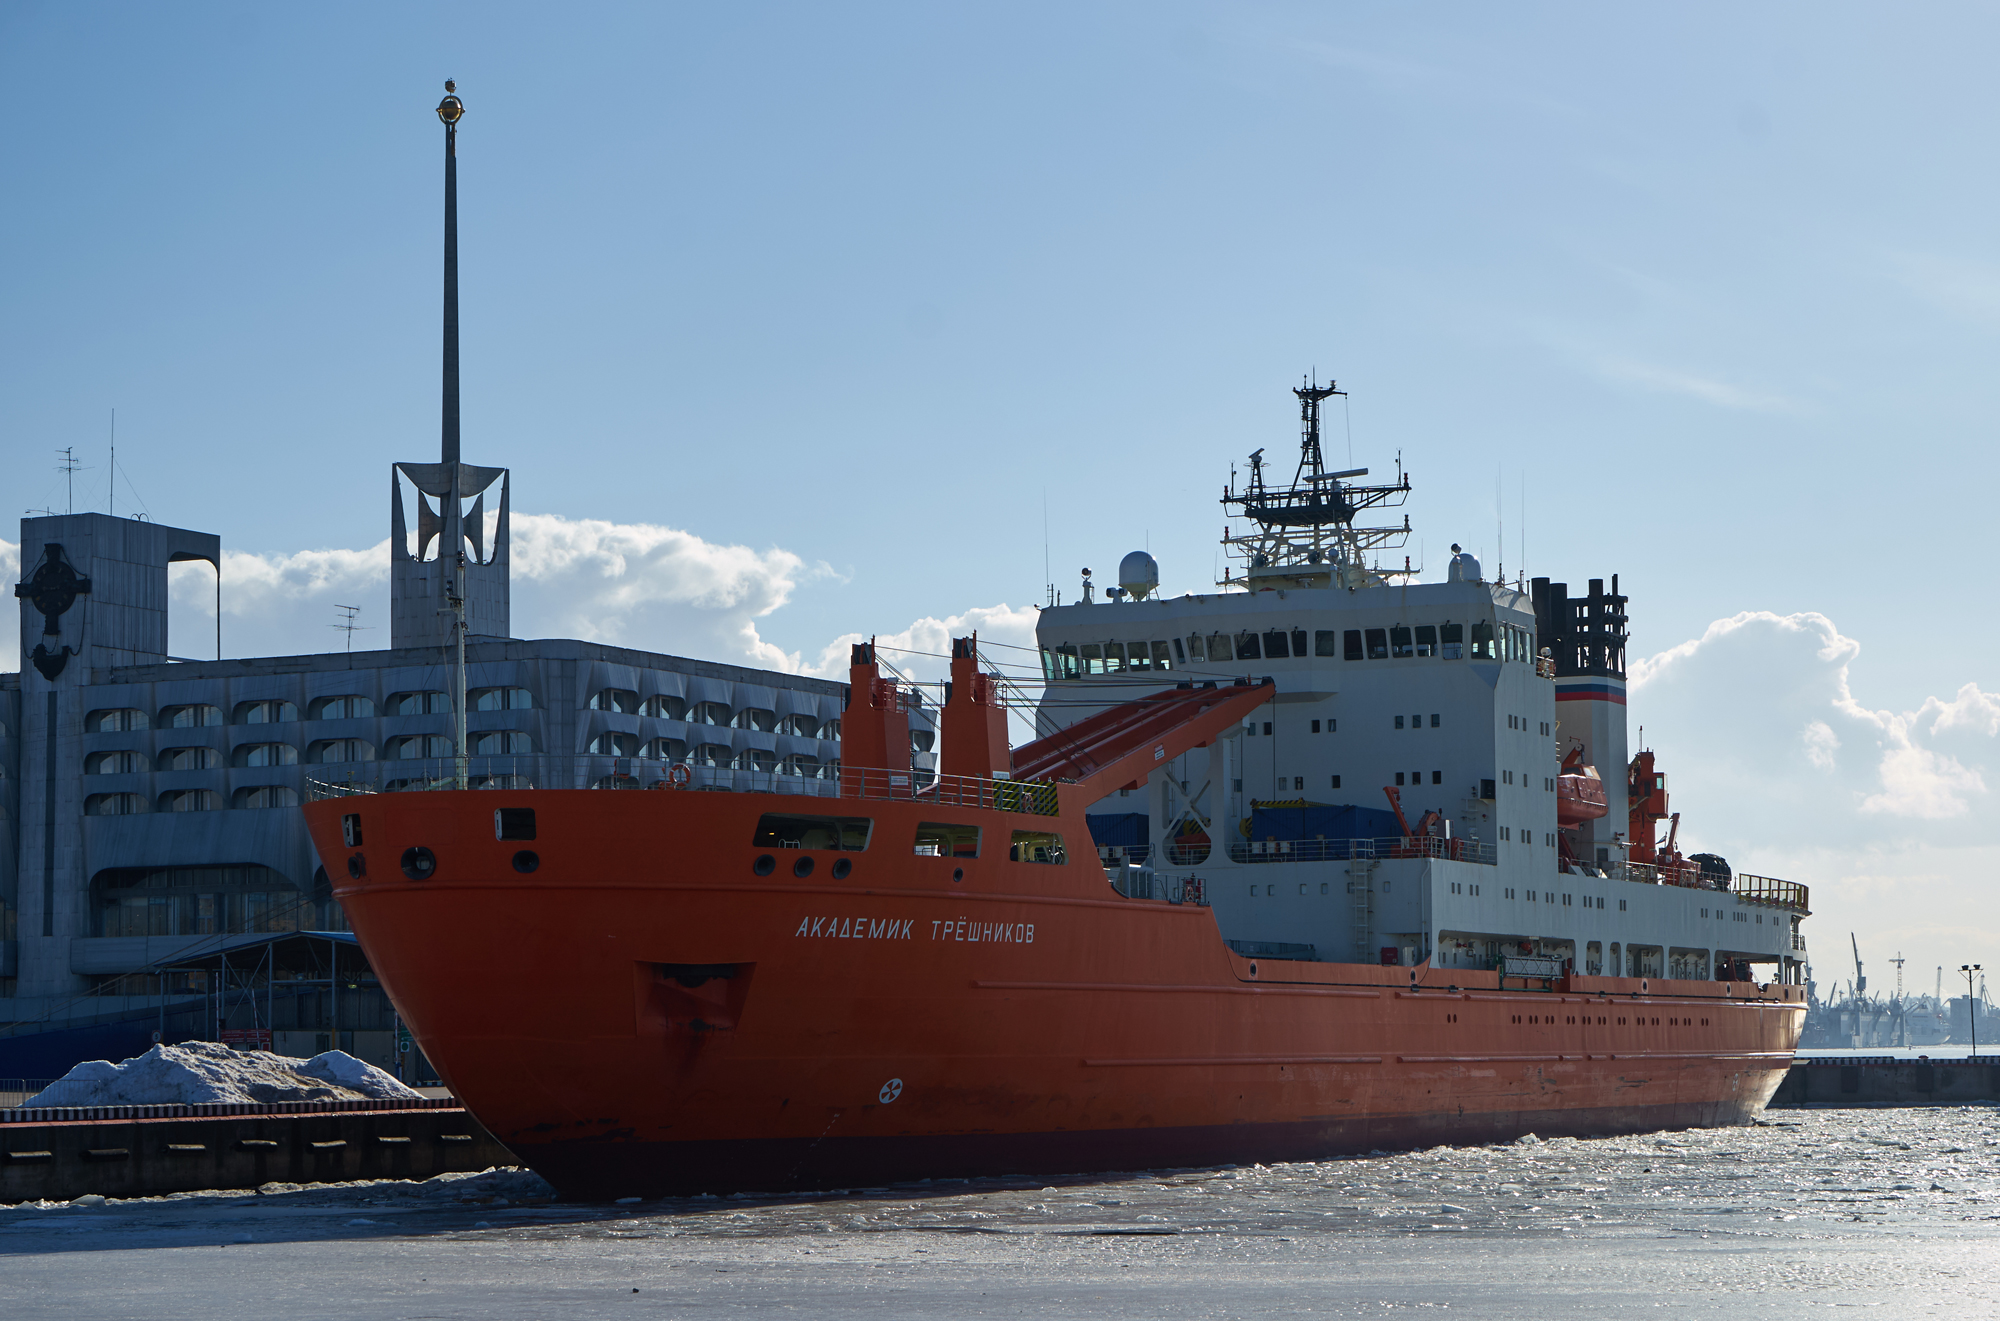 Le navire scientifique Akademik Treshnikov avant son départ pour le tour de l'Antarctique.